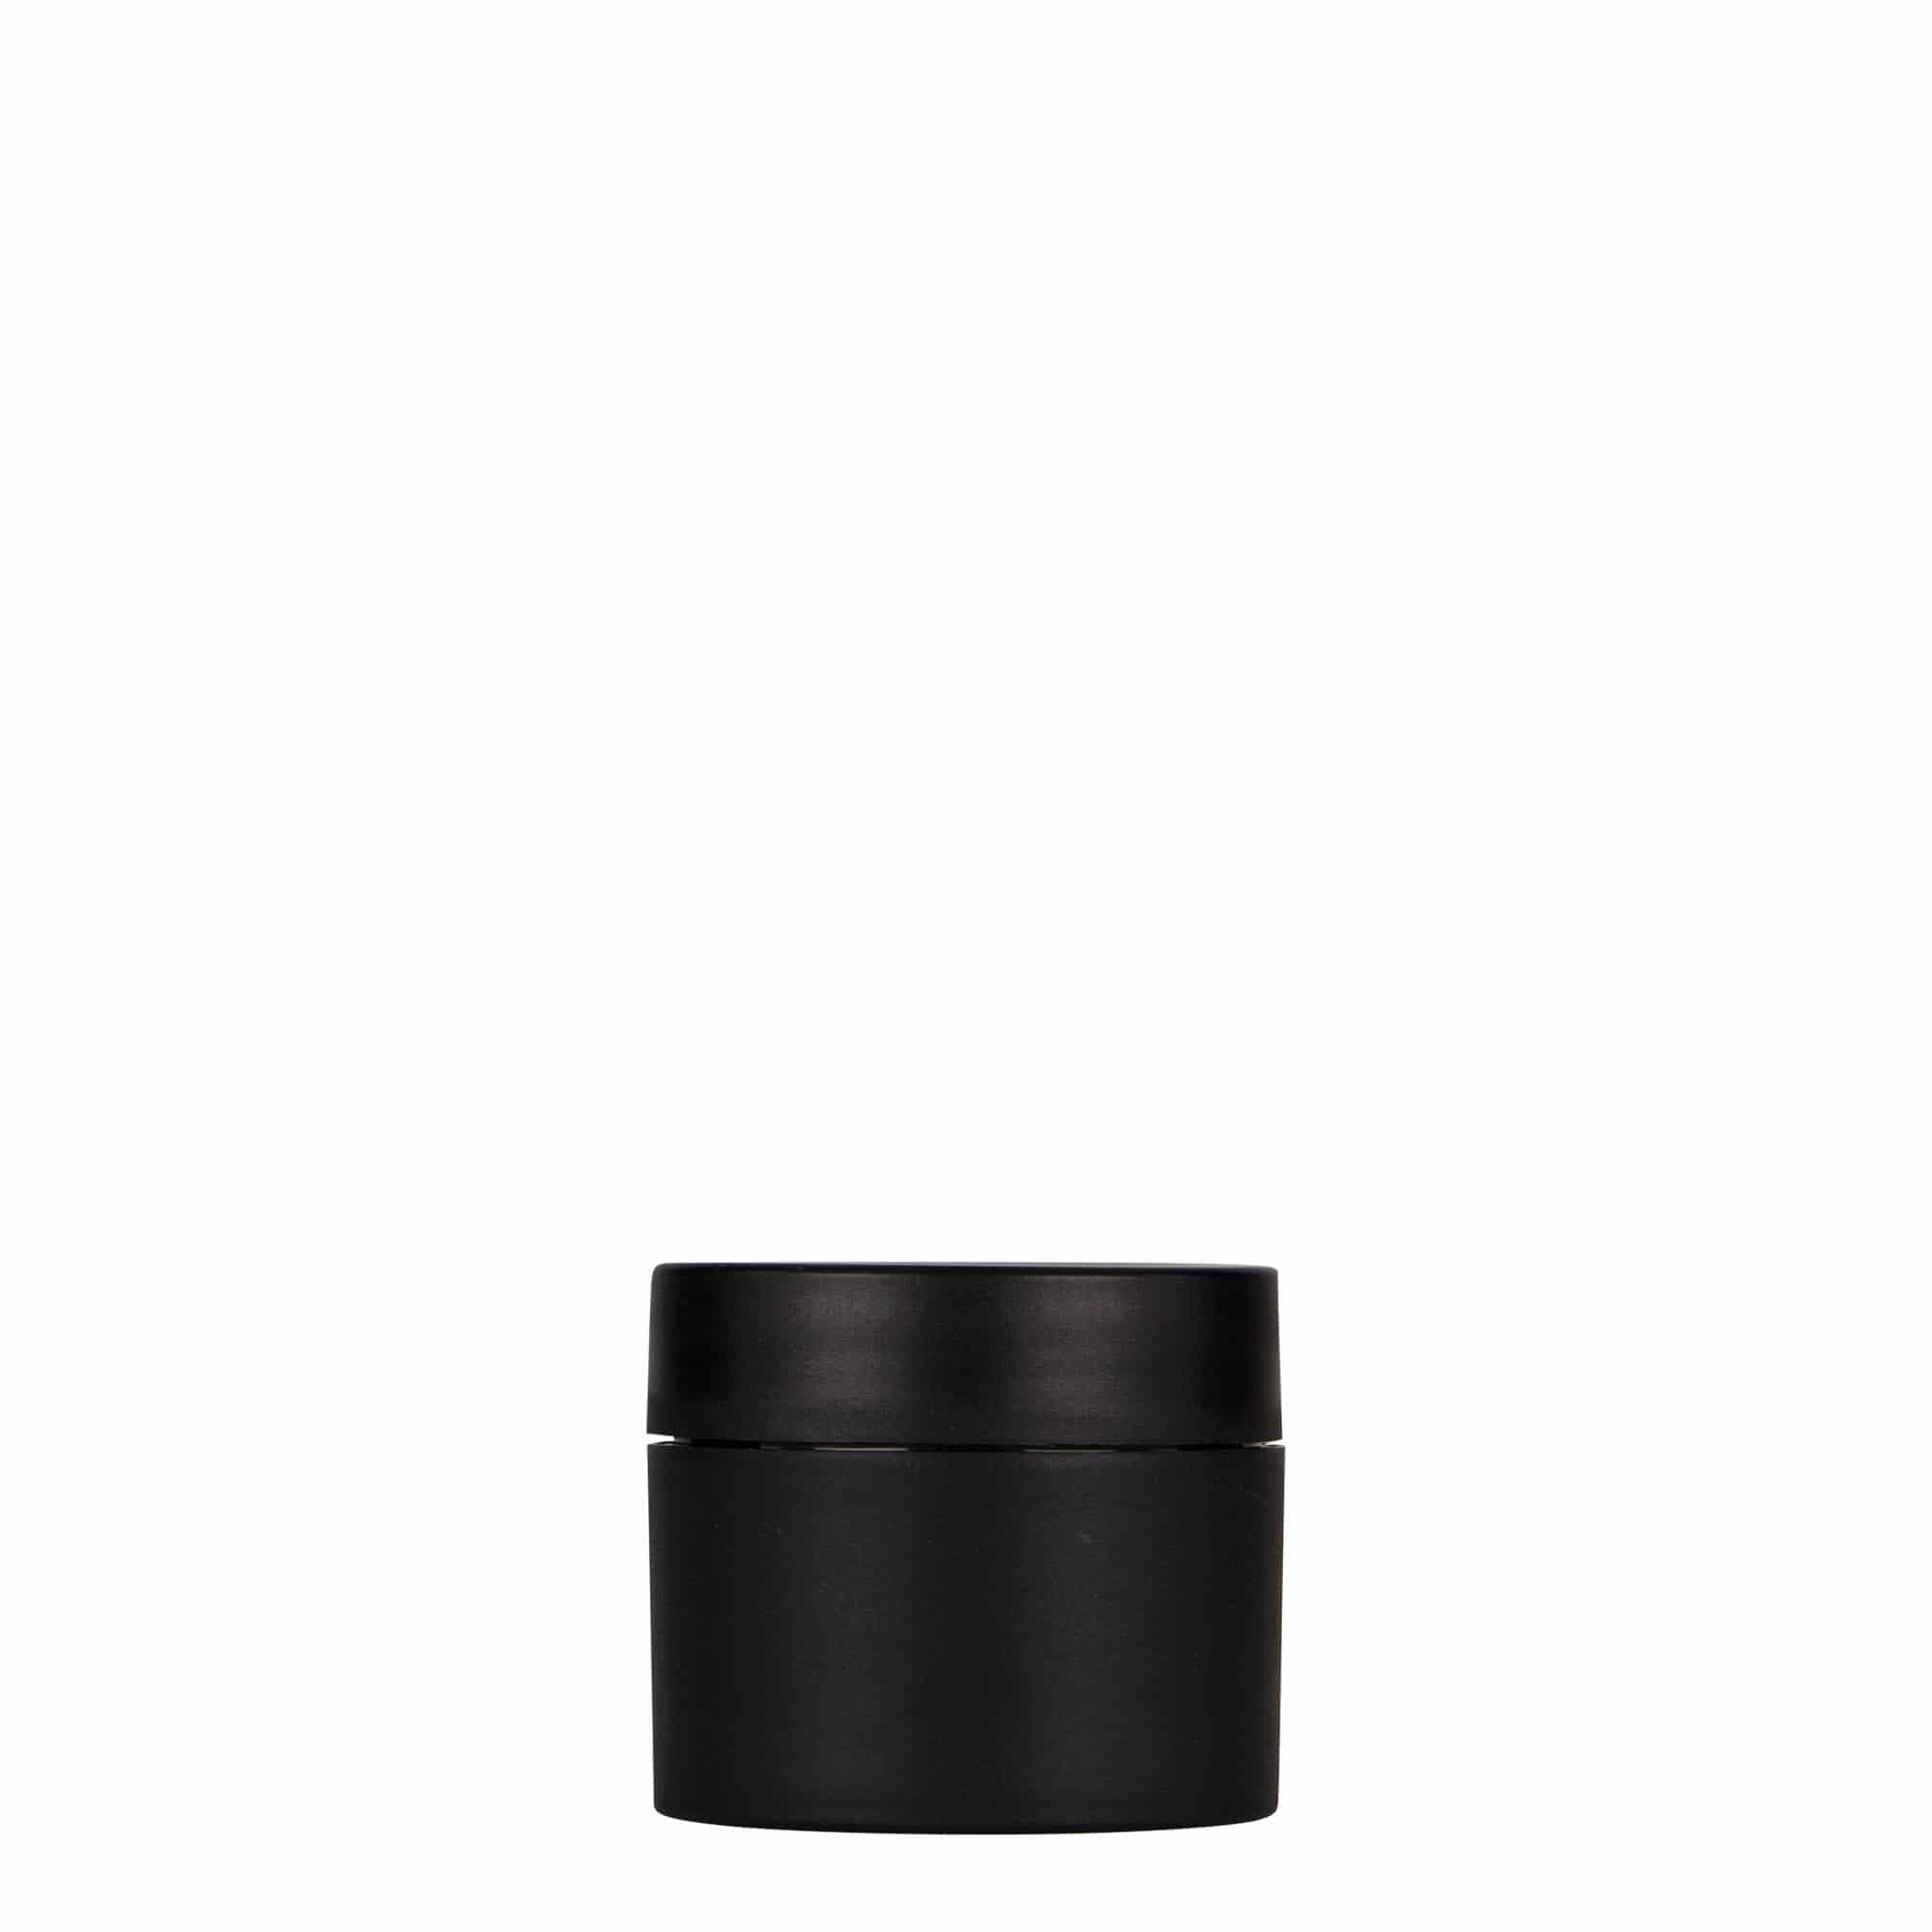 30 ml plastic jar 'Antonella', PP, black, closure: screw cap